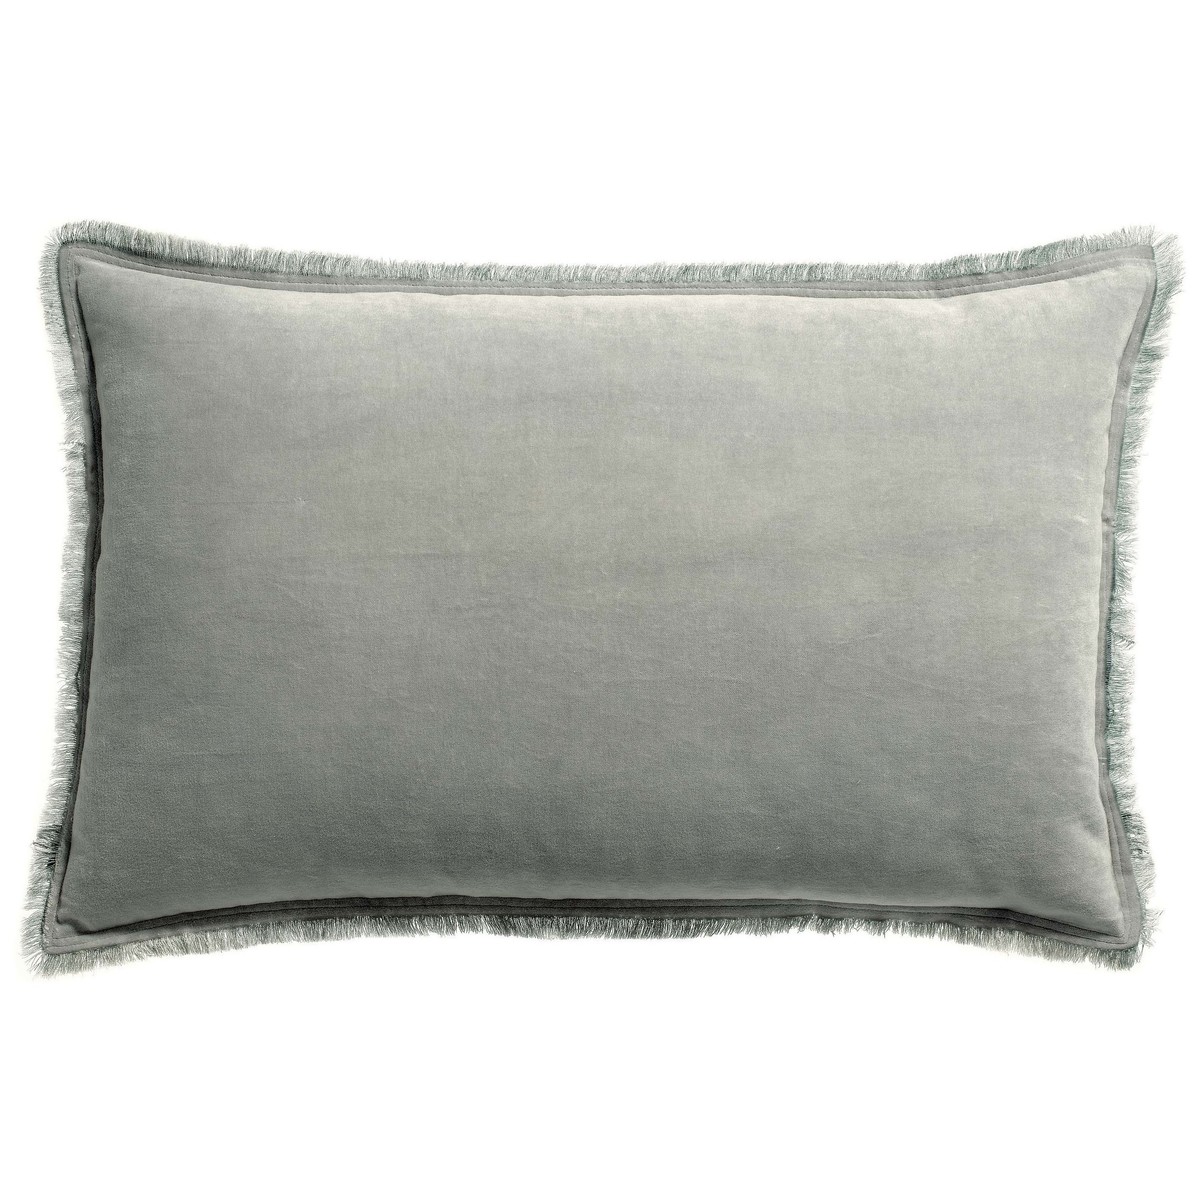 Home Cushions covers Vivaraise FARA Grey / Pearl